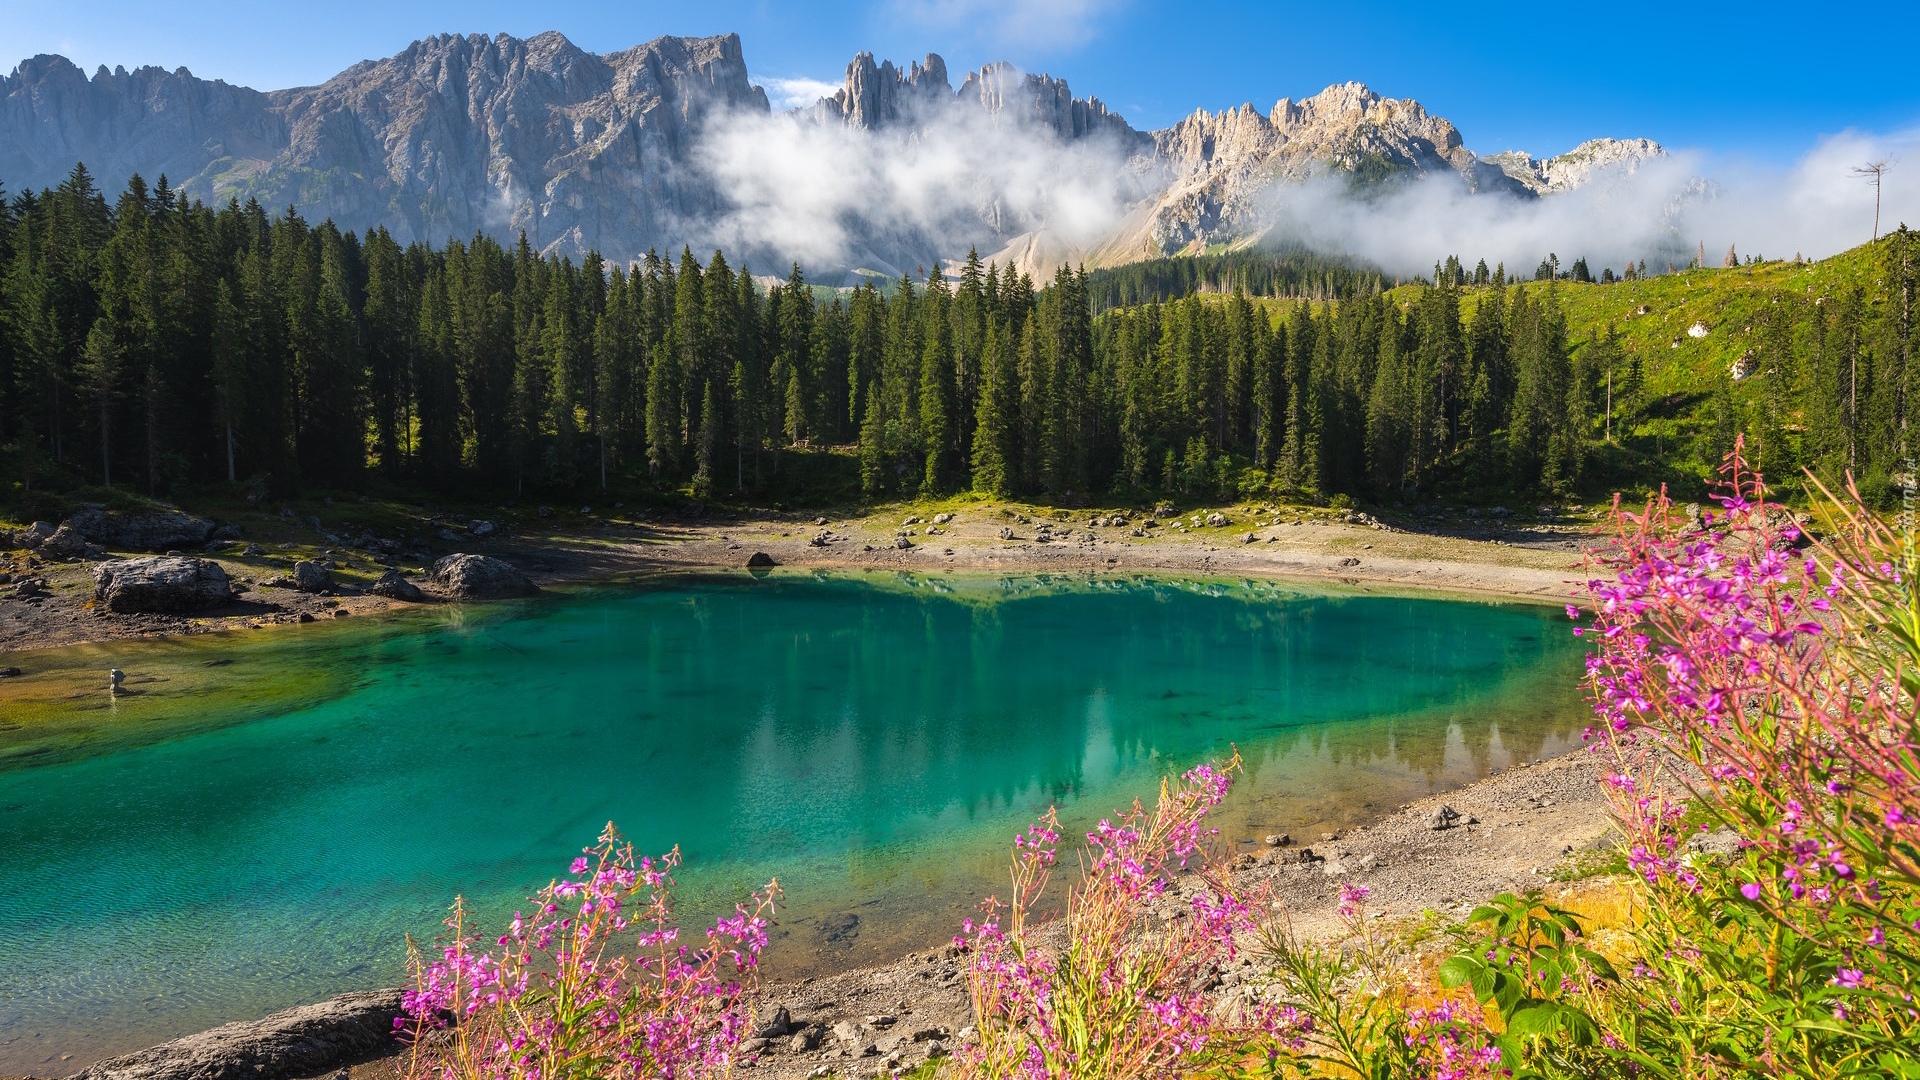 Jezioro Karersee, Lago di Carezza, Las, Drzewa, Roślinność, Kwiaty, Tyrol, Włochy